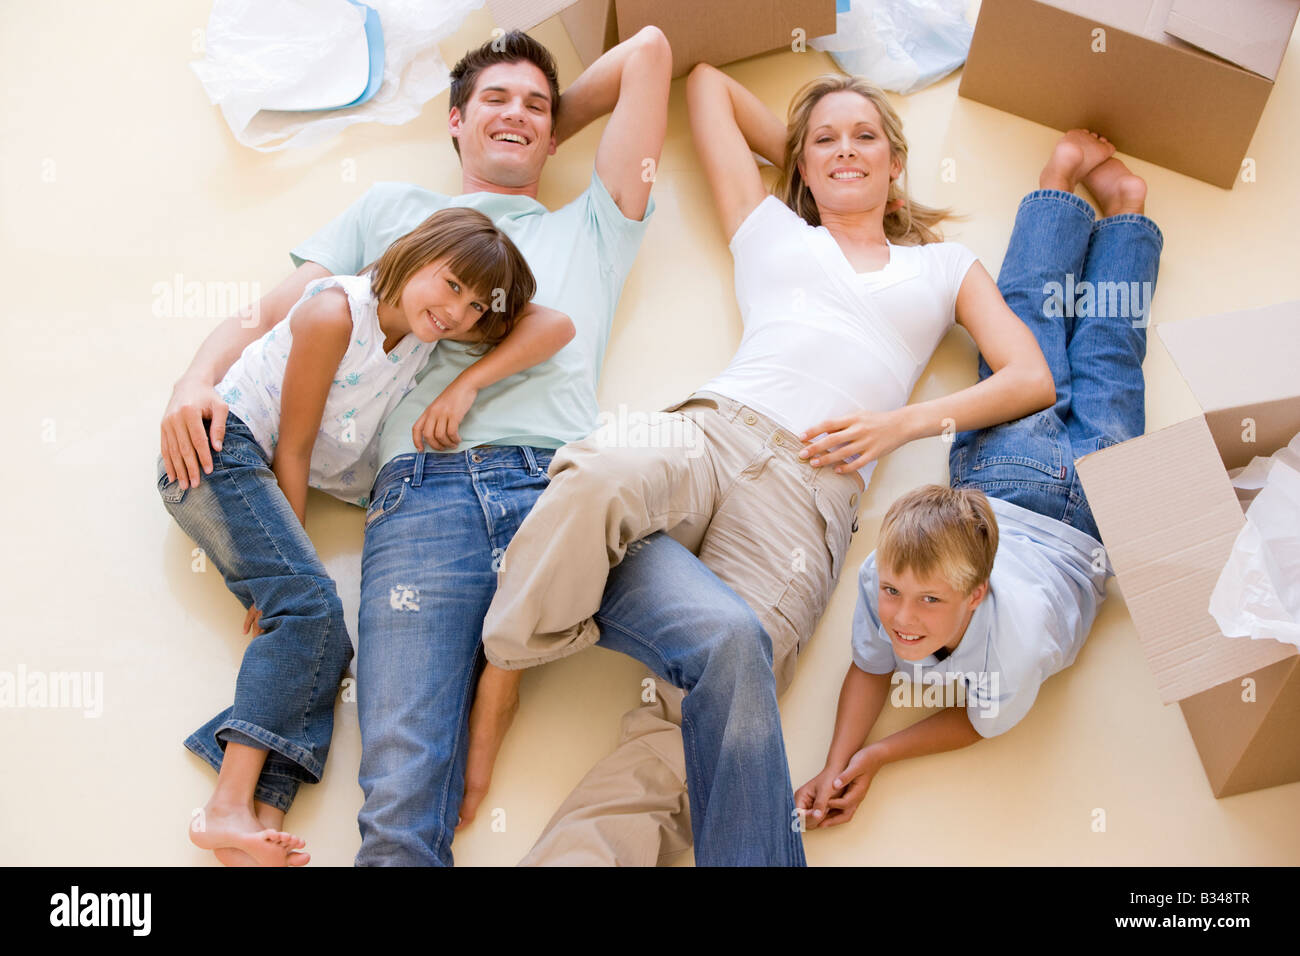 Familie im neuen Hause lächelnd am Boden durch offene Boxen liegend Stockfoto